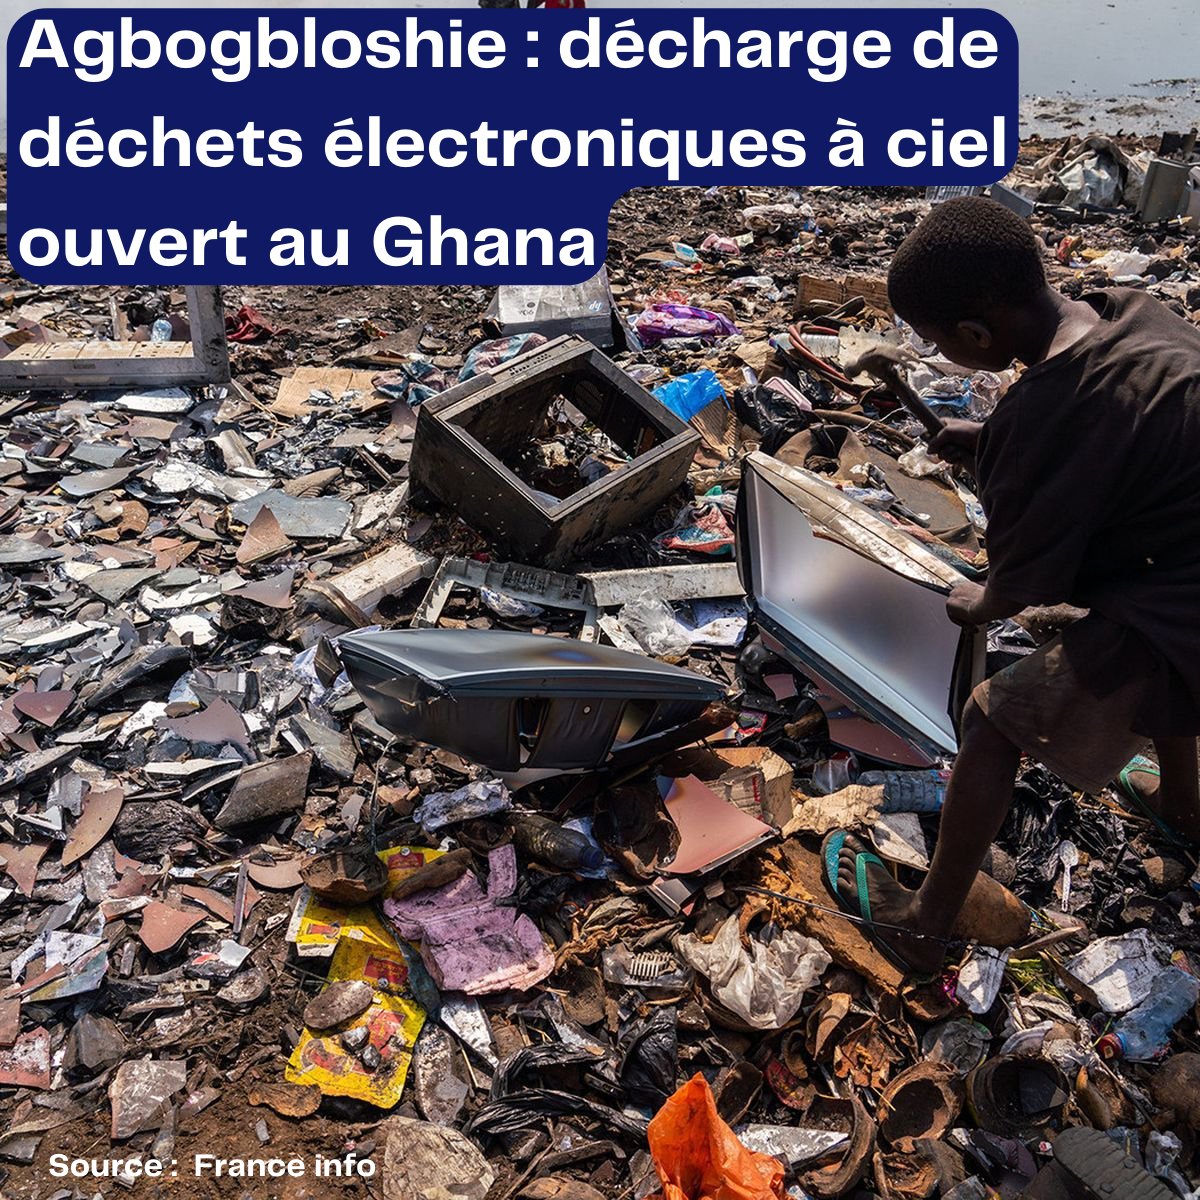 🚨 #AlarmeÉcologique à Agbogbloshie, Ghana – une avalanche de déchets électroniques depuis des décennies. Autrefois terre d'espoir, aujourd'hui symbole d'un désastre écologique. 🌍
#DEEE #Recyclage #Agbogbloshie